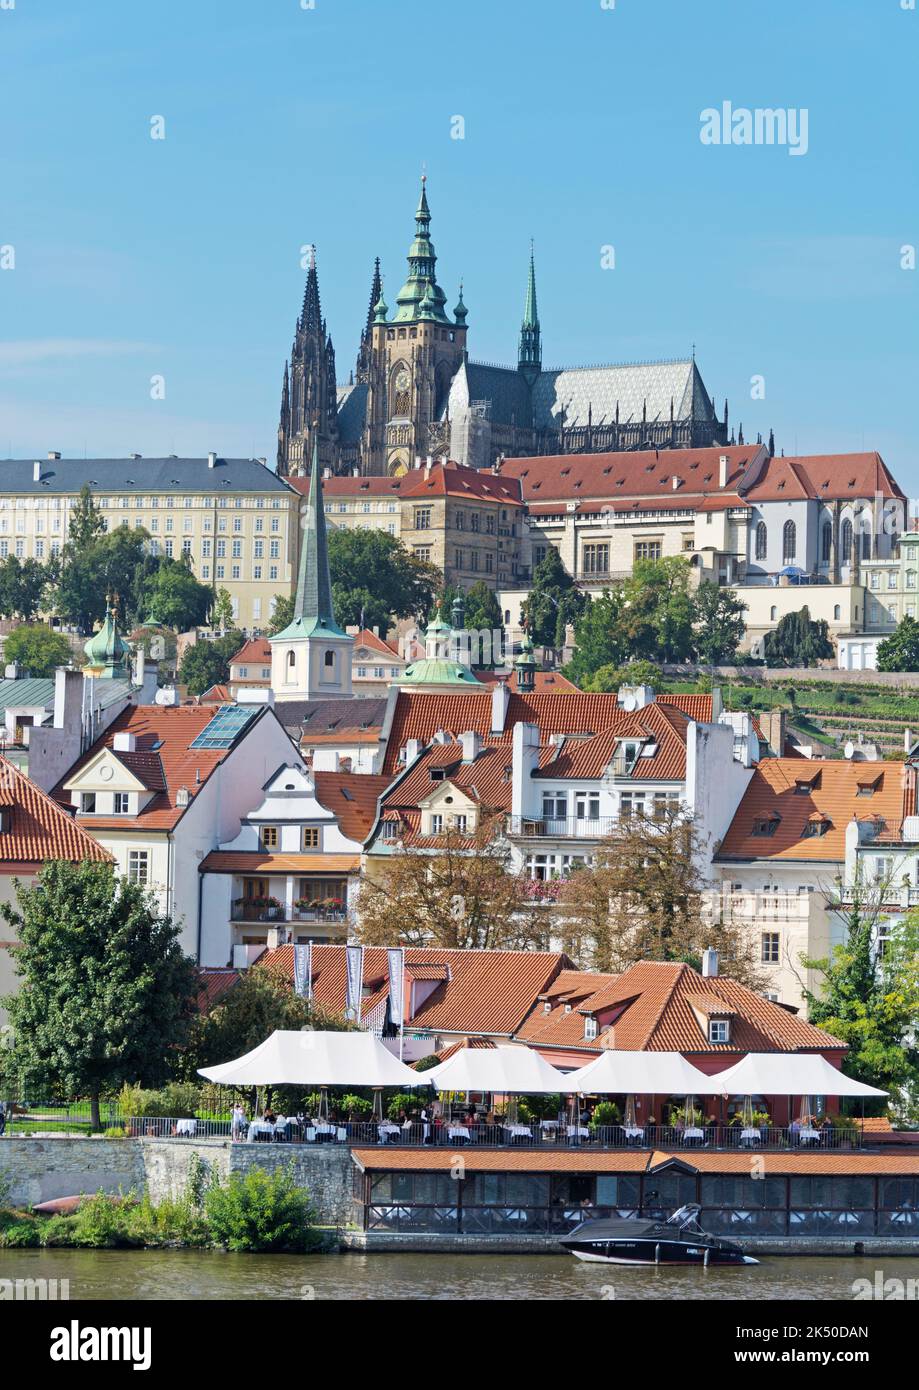 Serie fotografica di Praga: Castello di Praga in formato ritratto Foto Stock